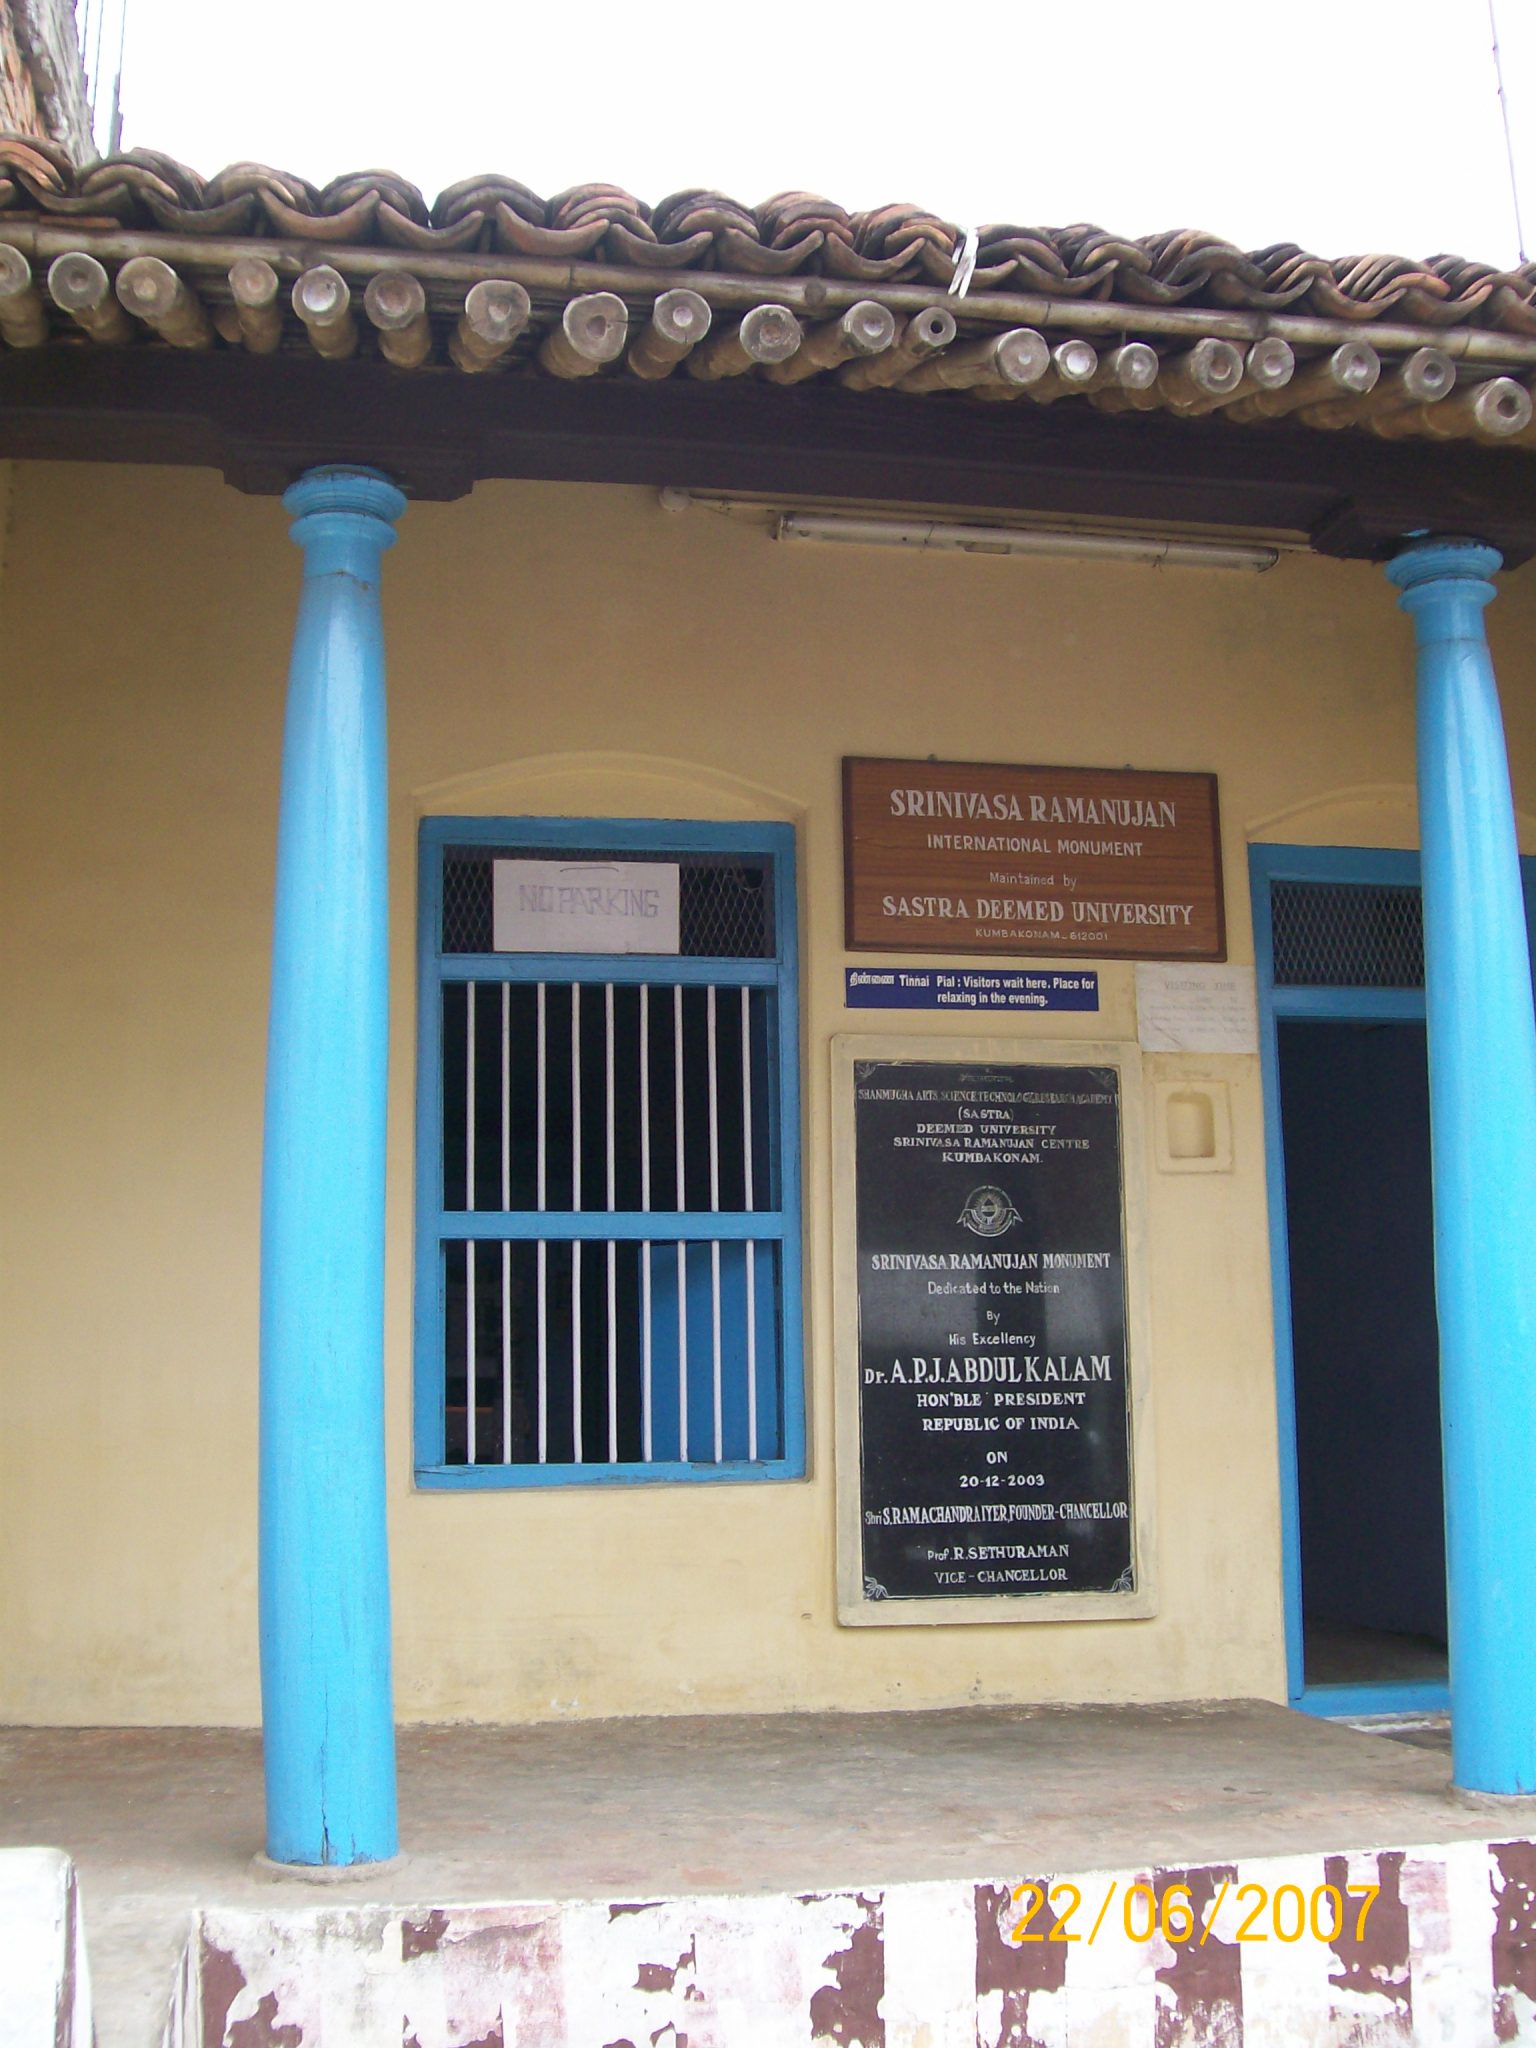 Mathematician Ramanujan Memorial